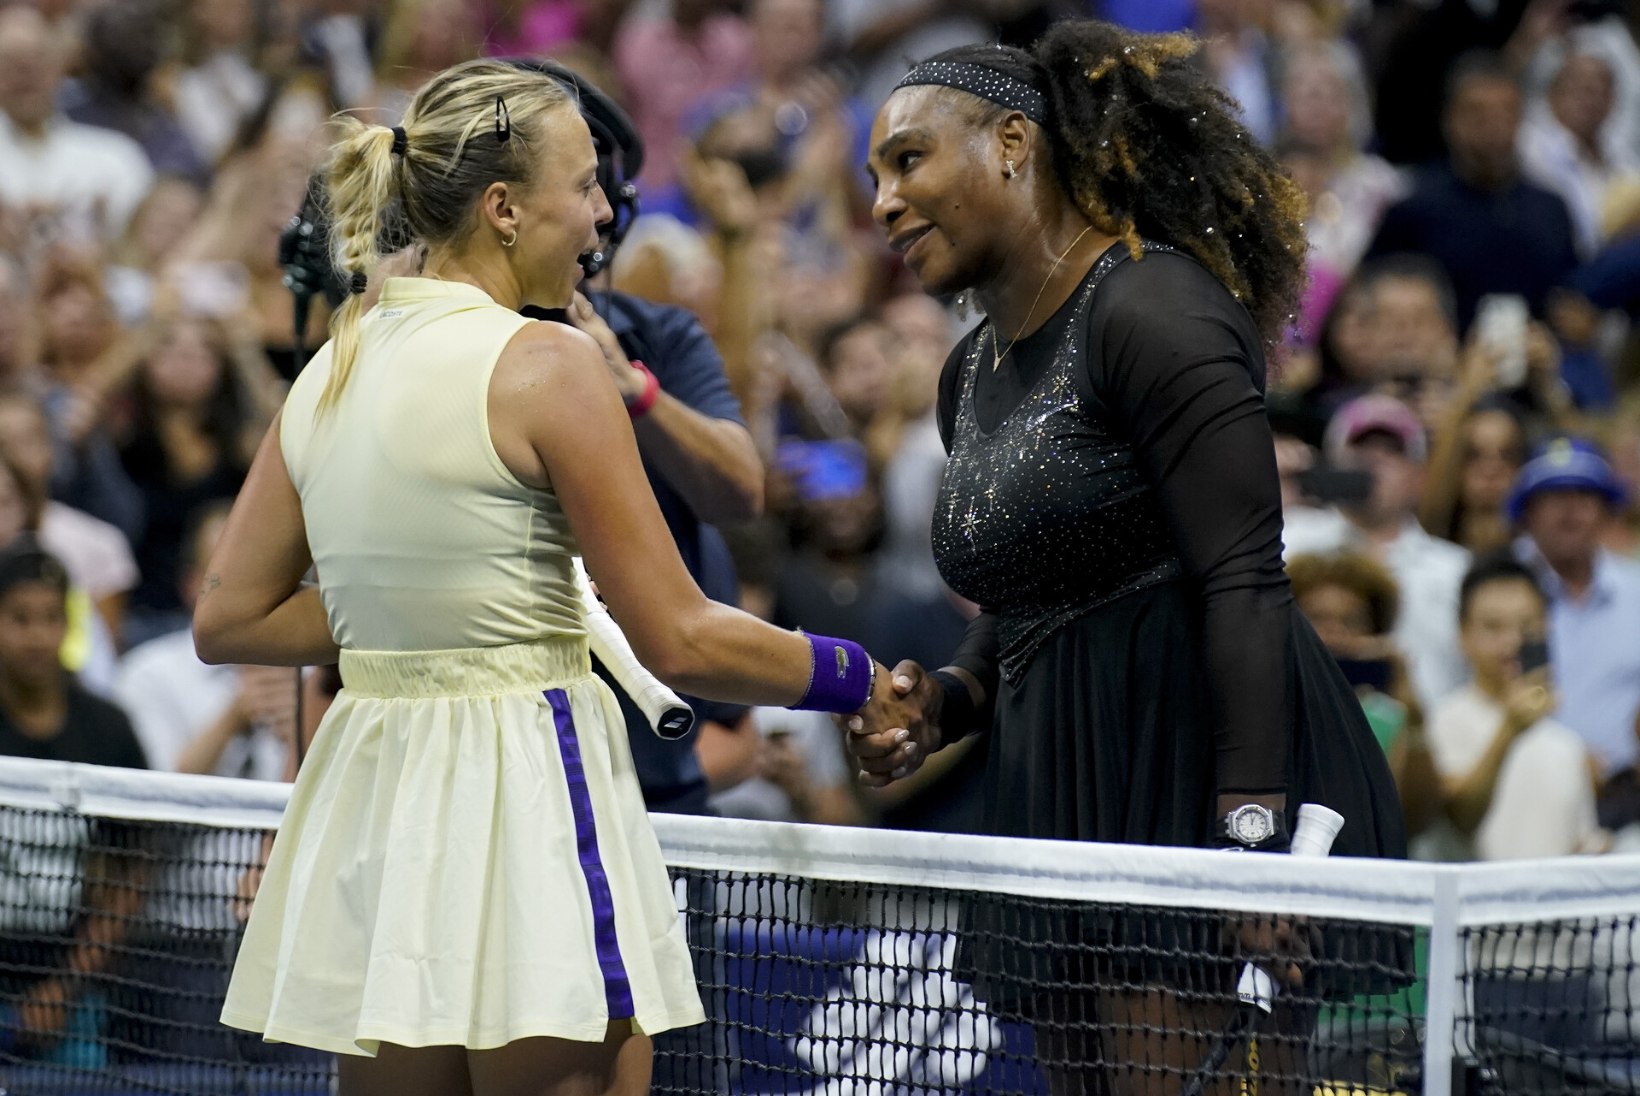 VIDEOD | MEELETU TENNISEÖÖ: Serena Williams ja Anett Kontaveit pakkusid oivalise lahingu, kuid legendi karjäär veel ei lõppenud! 